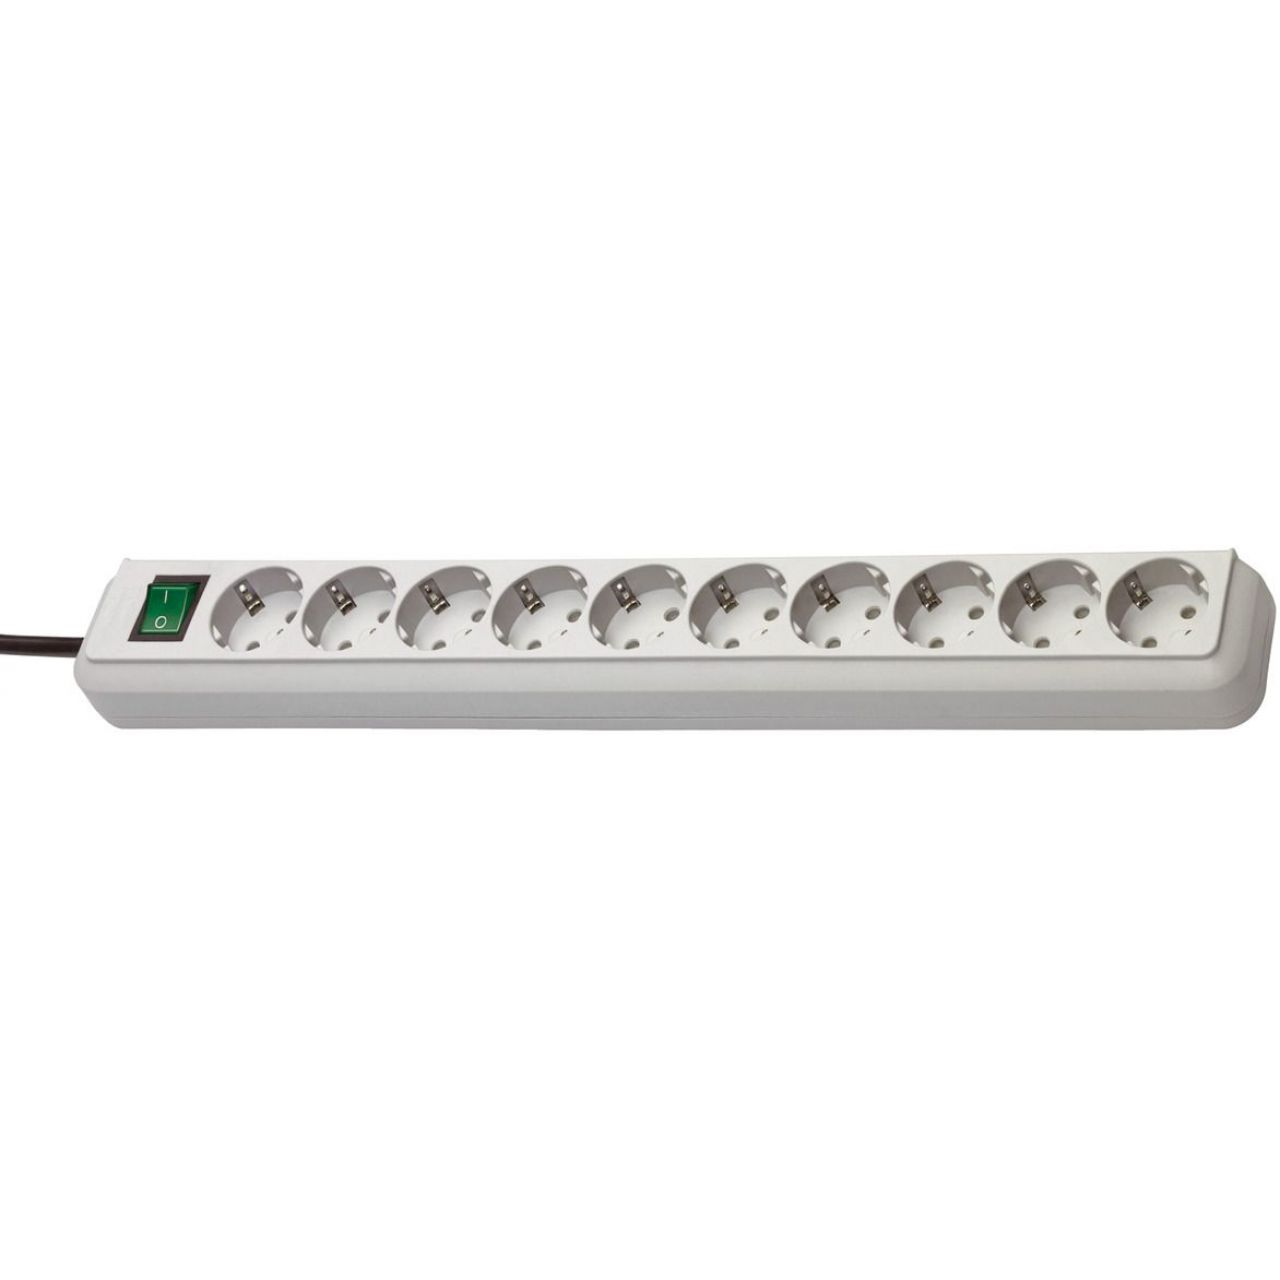 Base múltiple Eco-Line gris claro con interruptor (10 tomas y 3 m)